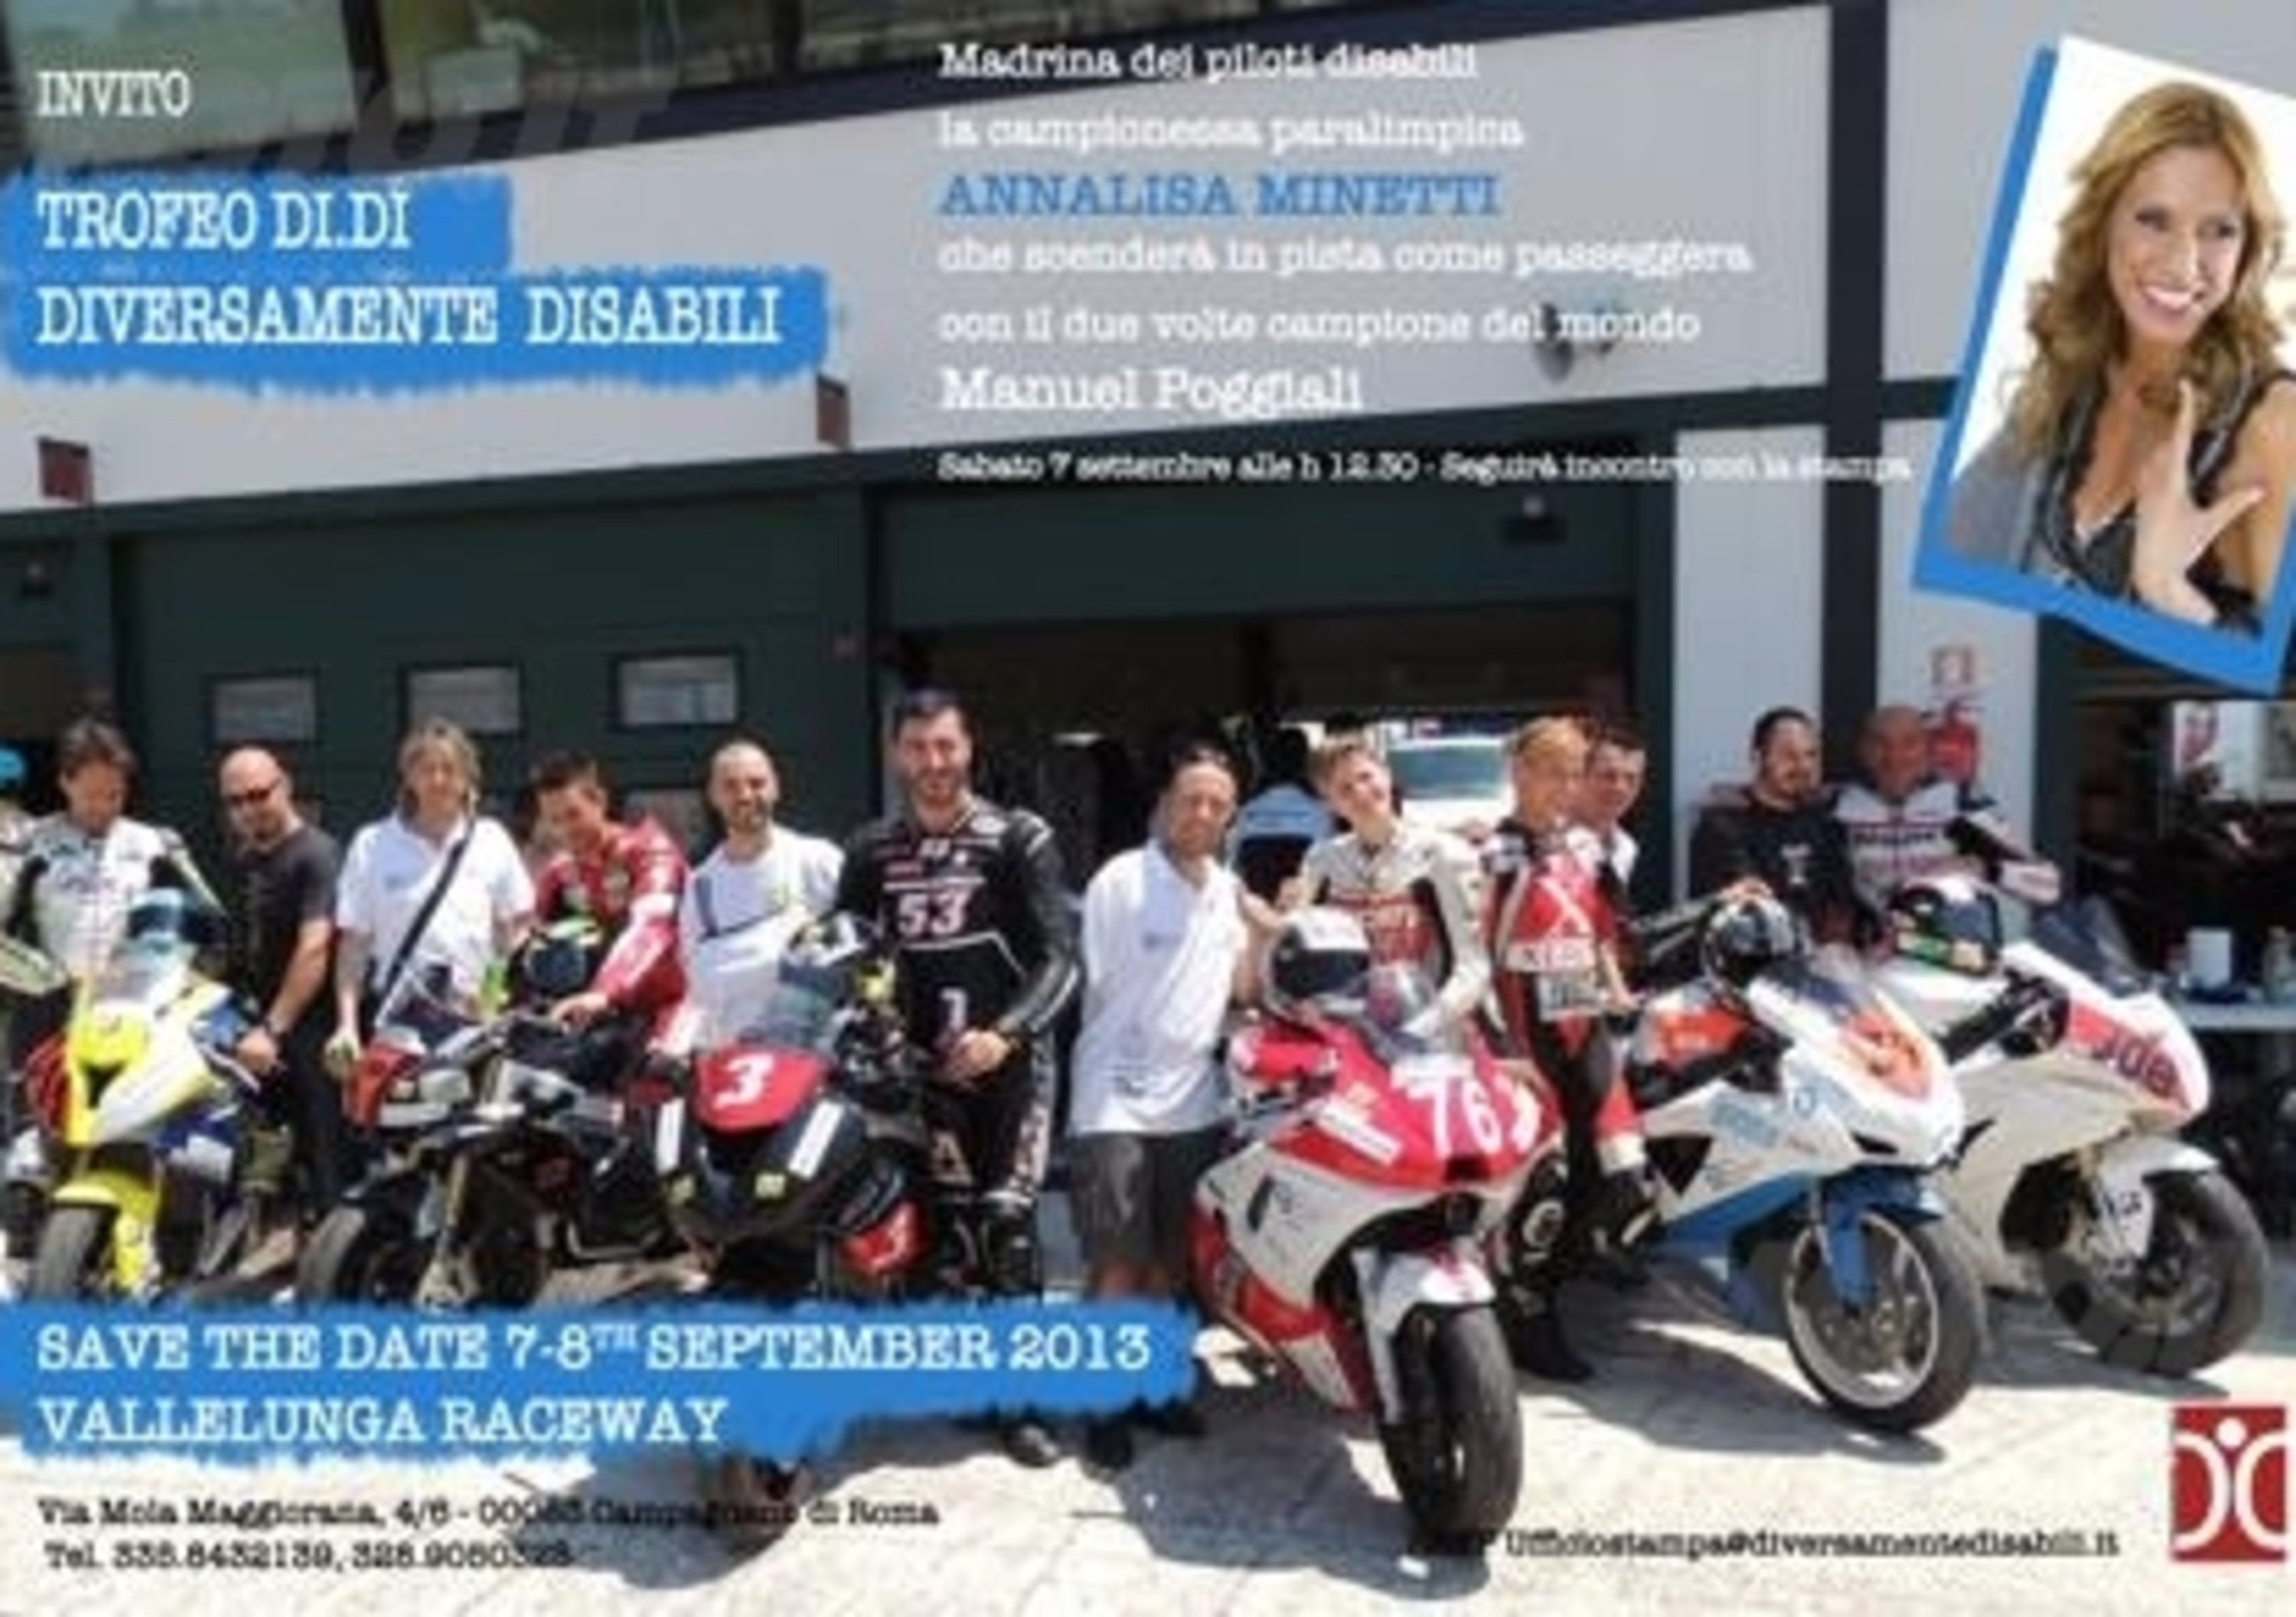 Il Team motociclistico Diversamente Disabili a Vallelunga